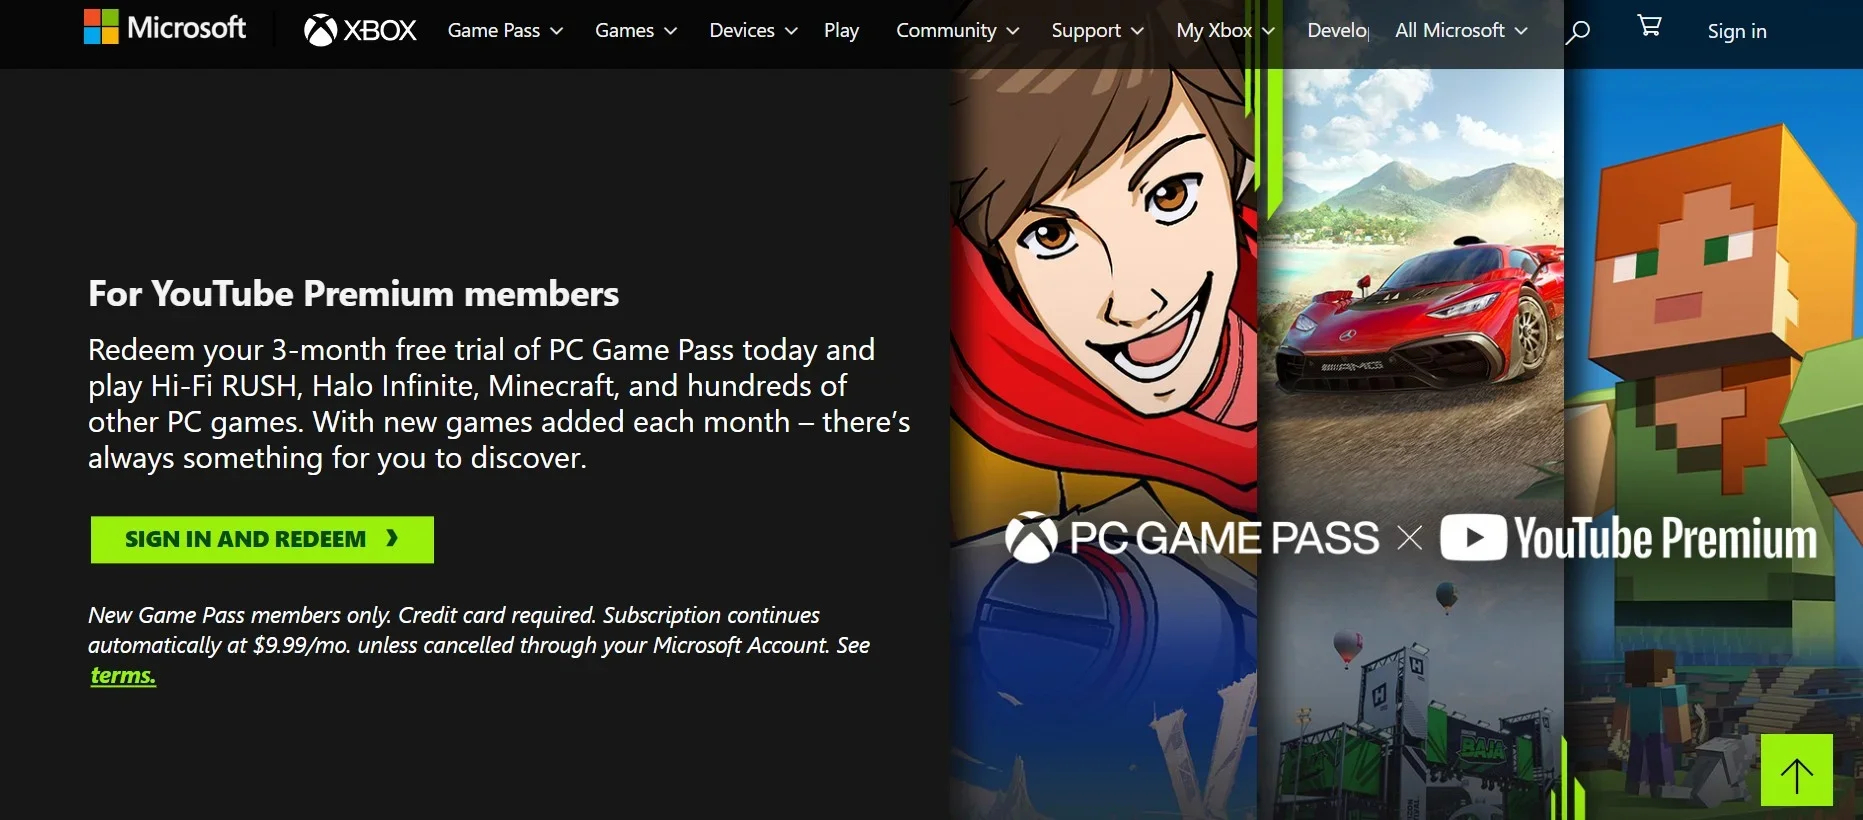 Imagem para Youtube Premium inclui 3 meses de PC Game Pass